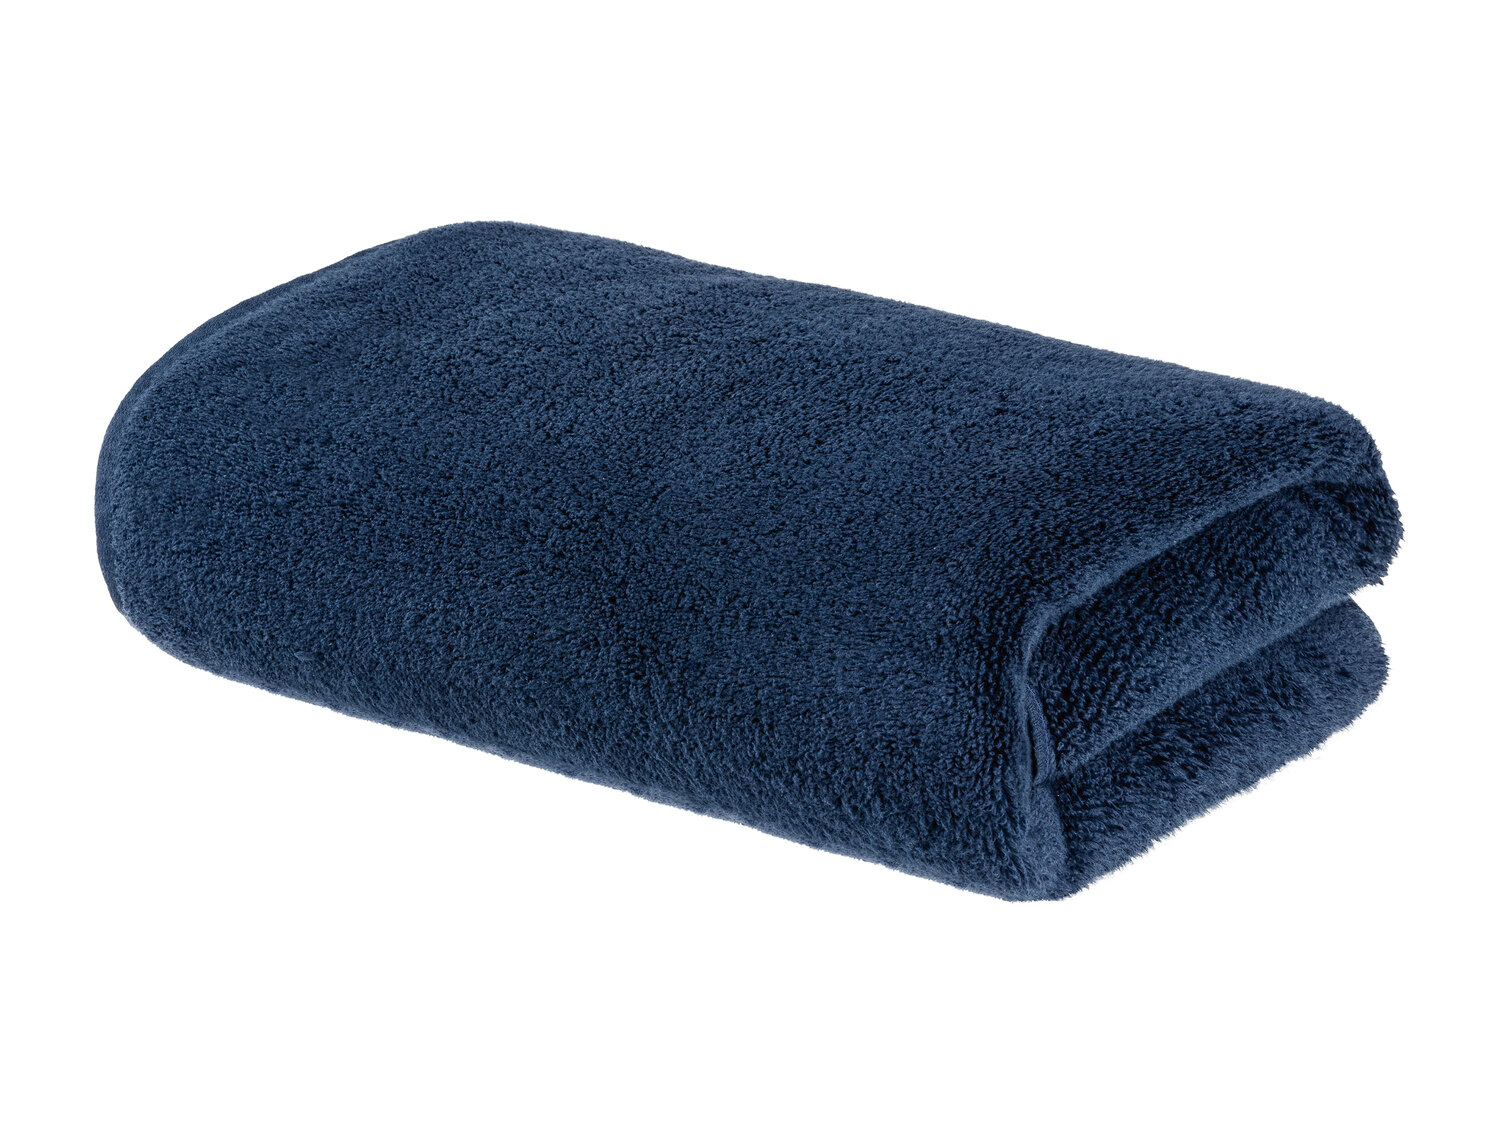 Ręcznik 70 x 140 cm , cena 29,99 PLN 
- 500 g/m2
- 100% bawełny
- technologia ...